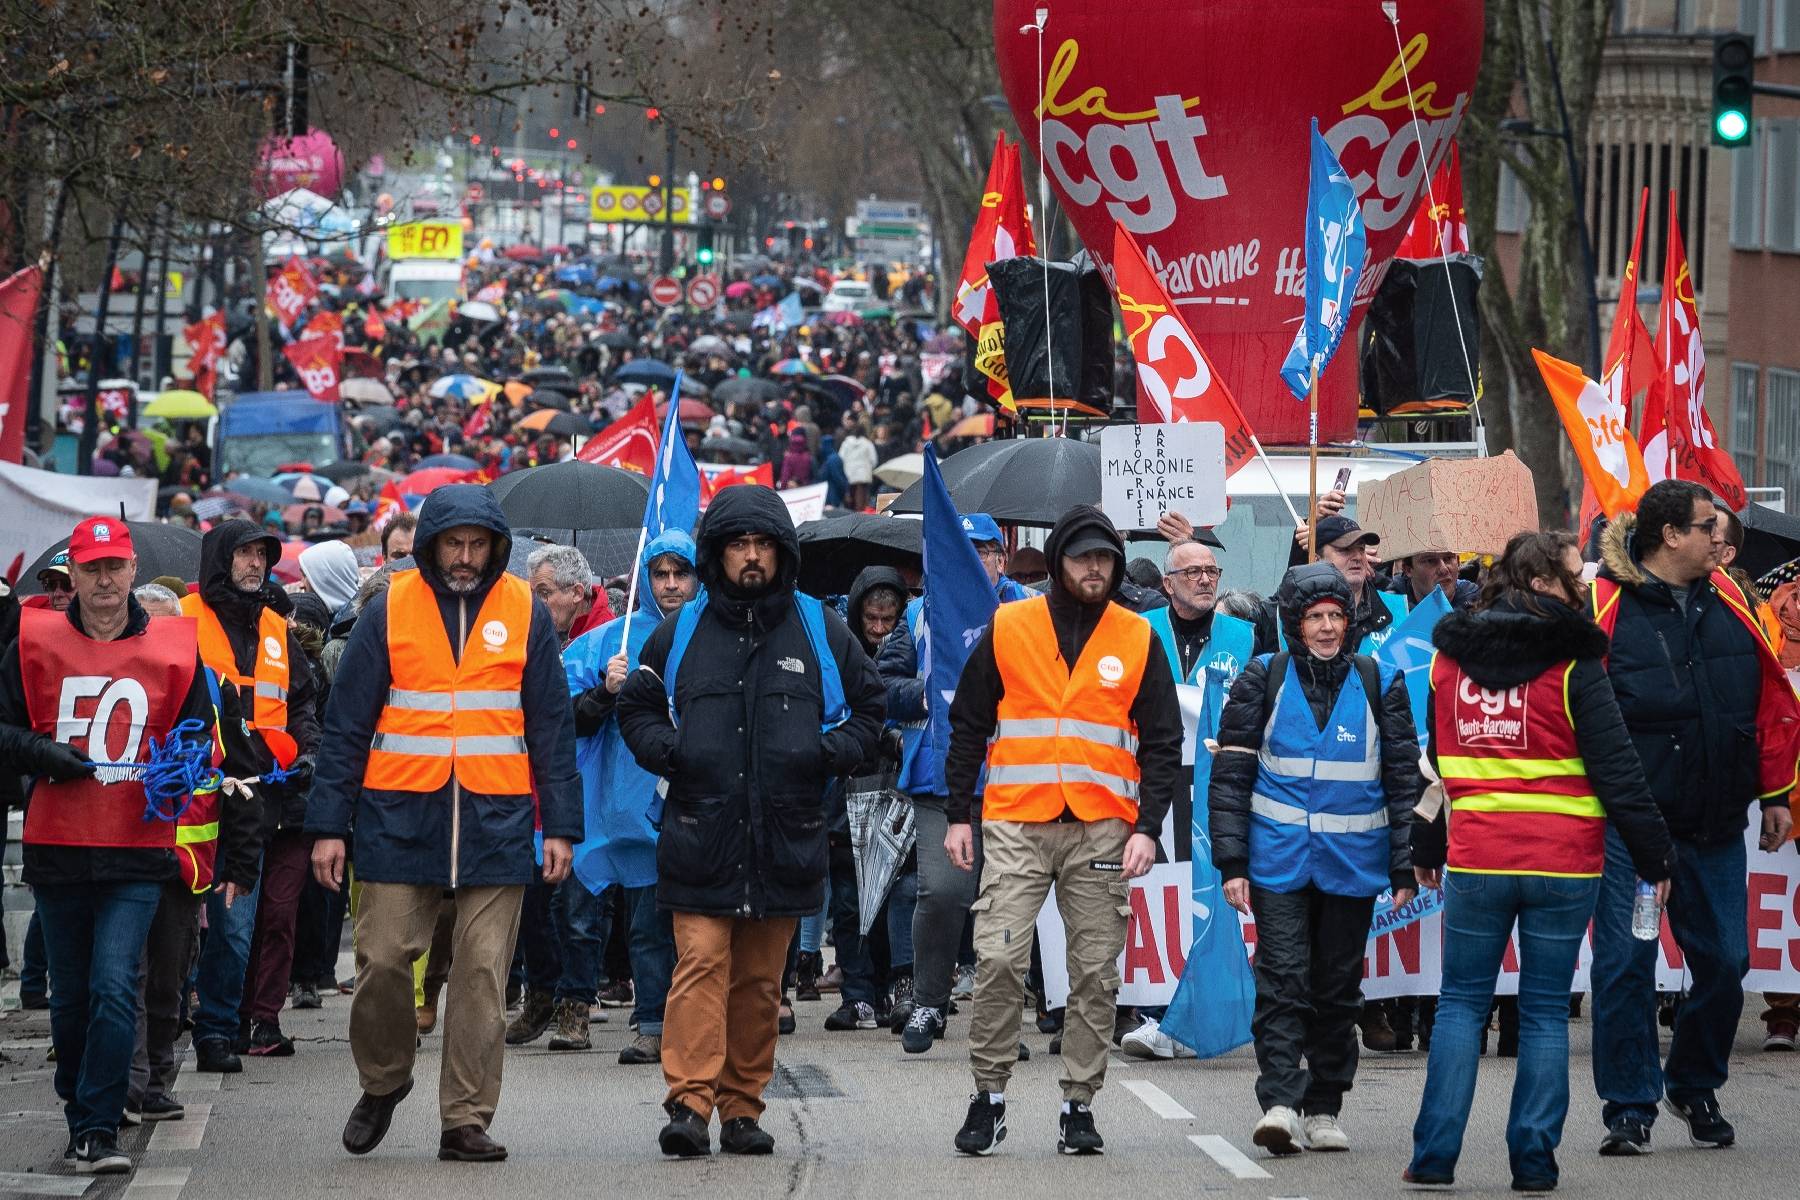 Réforme des retraites : 368 000 manifestants en France selon le ministère de l'Intérieur, plus d'un million selon la CGT